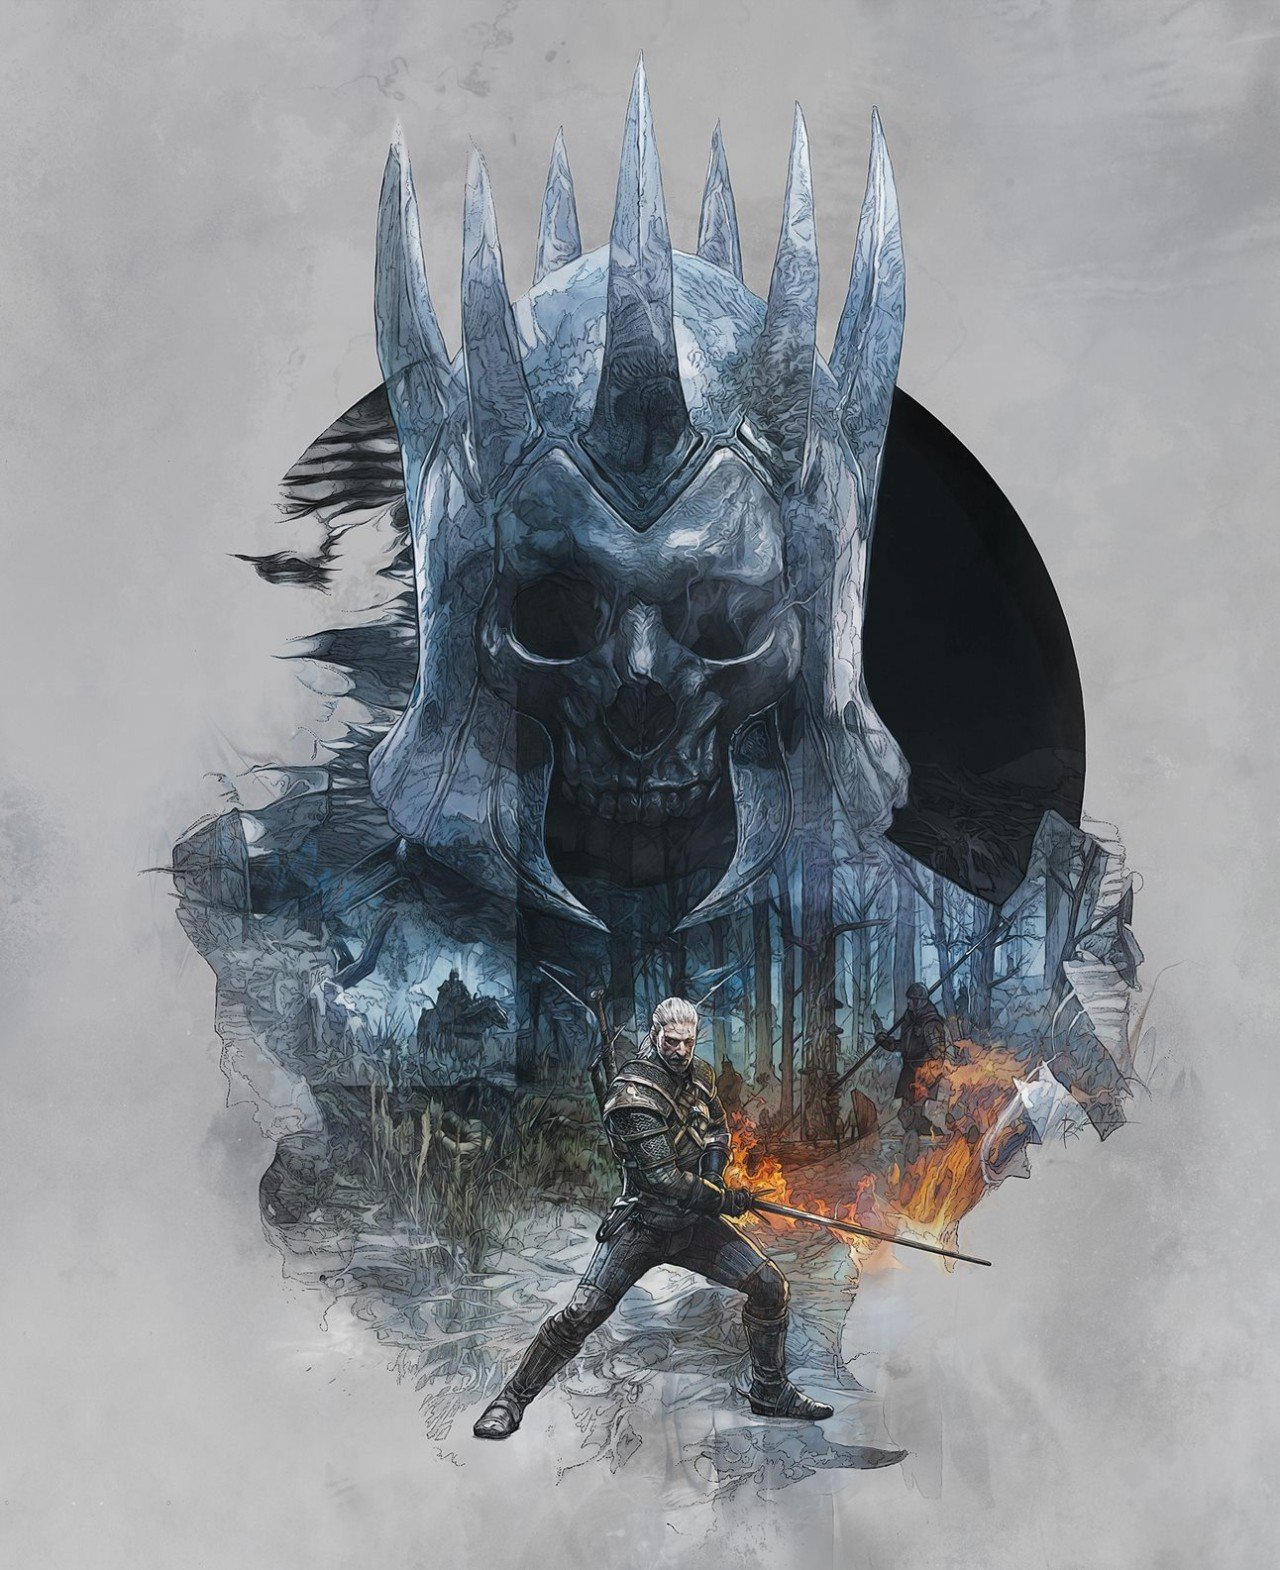 Poster du jeu vidéo The Witcher 3: Wild Hunt avec la Chasse Sauvage